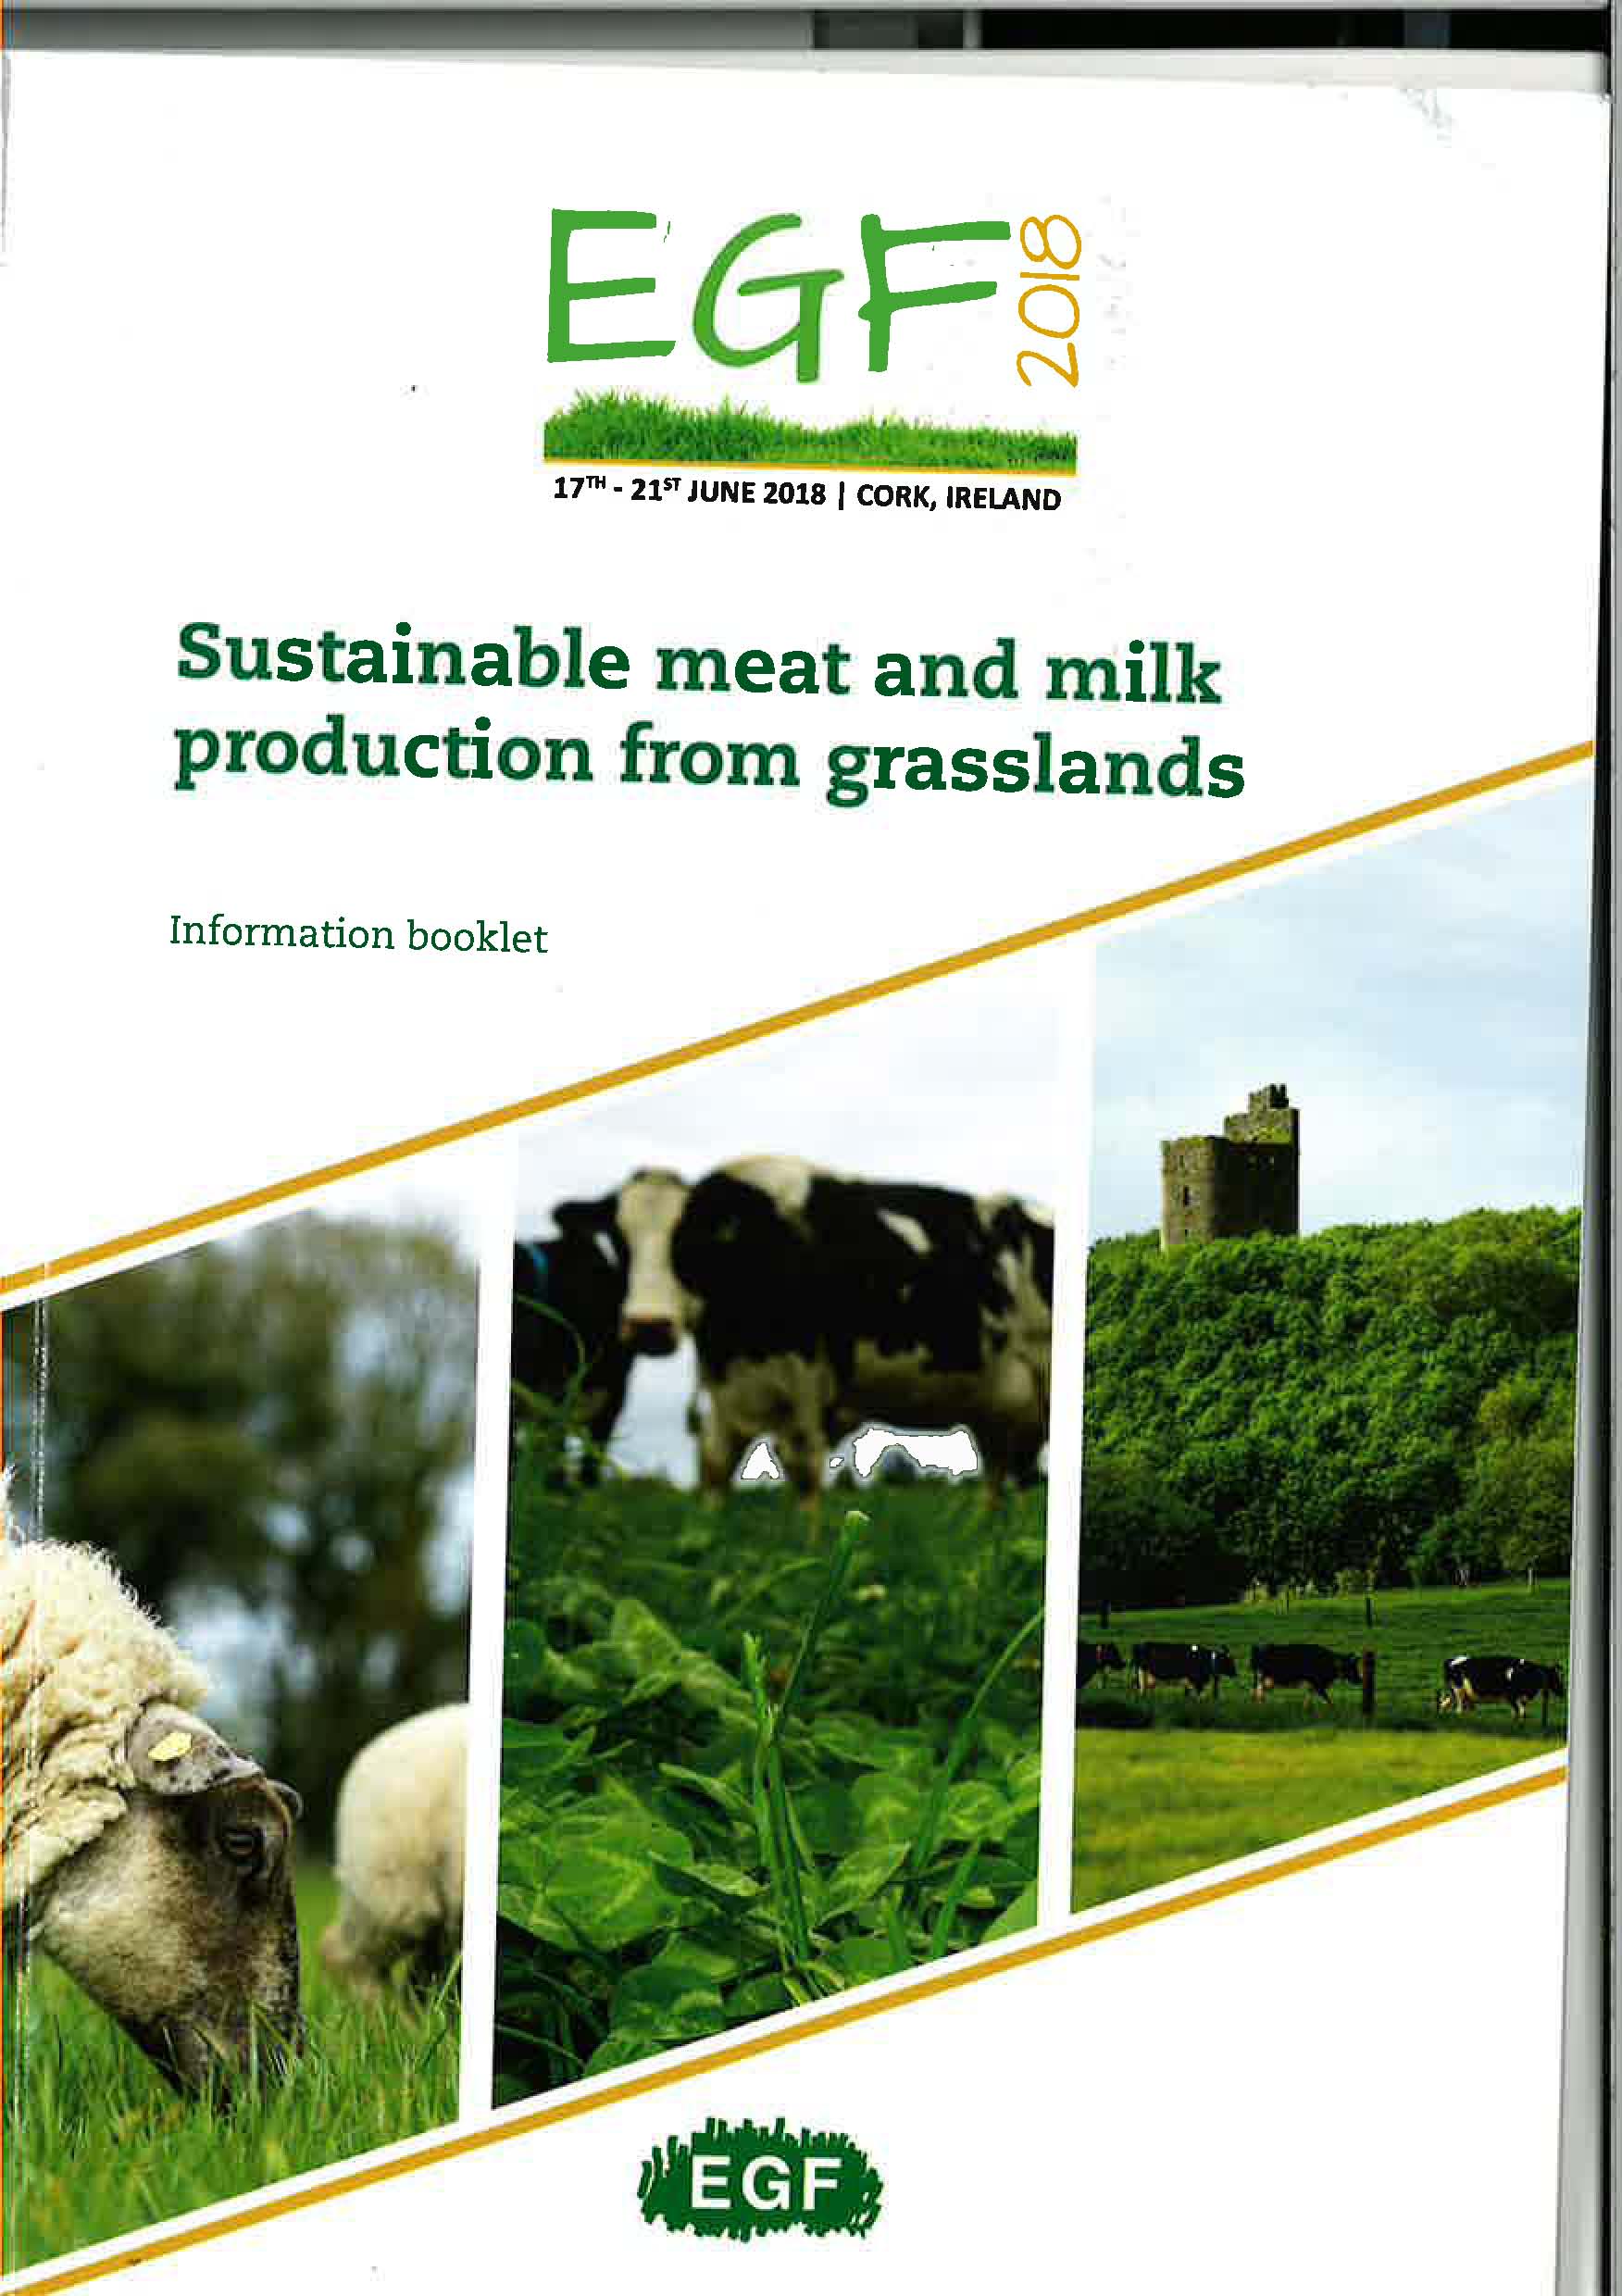 Presentación de resultados del proyecto en el congreso internacional EGF 2018 "Sustainable meat and milk production from grasslands"